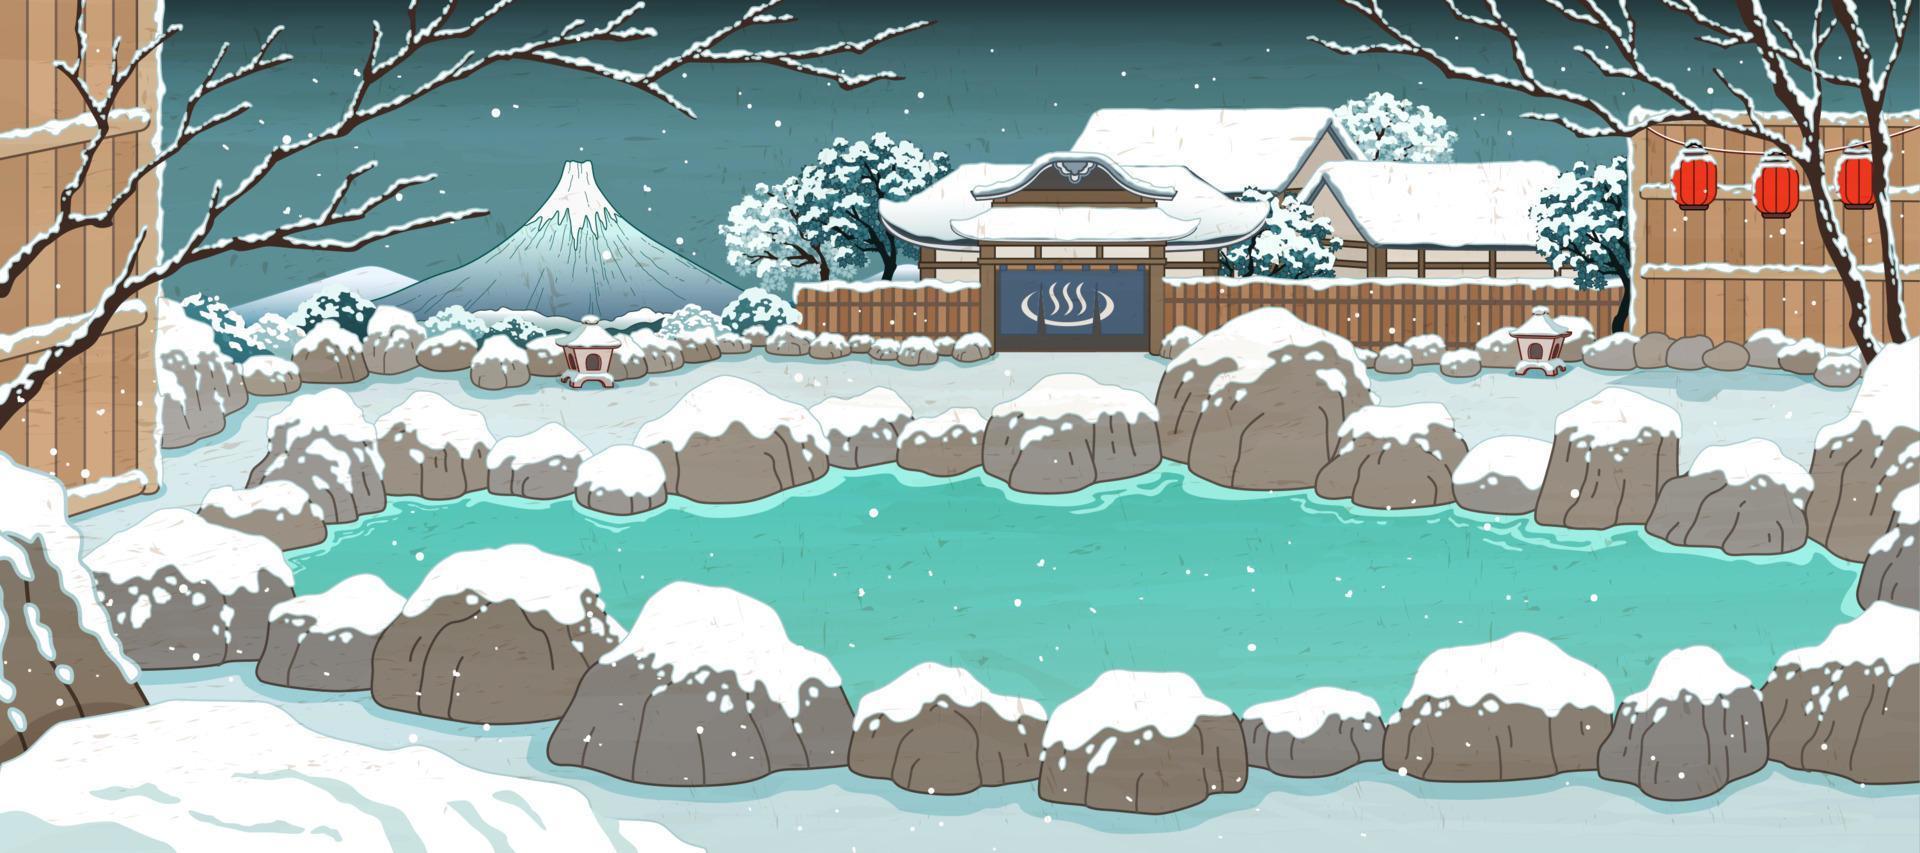 giapponese ukiyo-e stile caldo primavera coperto di neve vettore